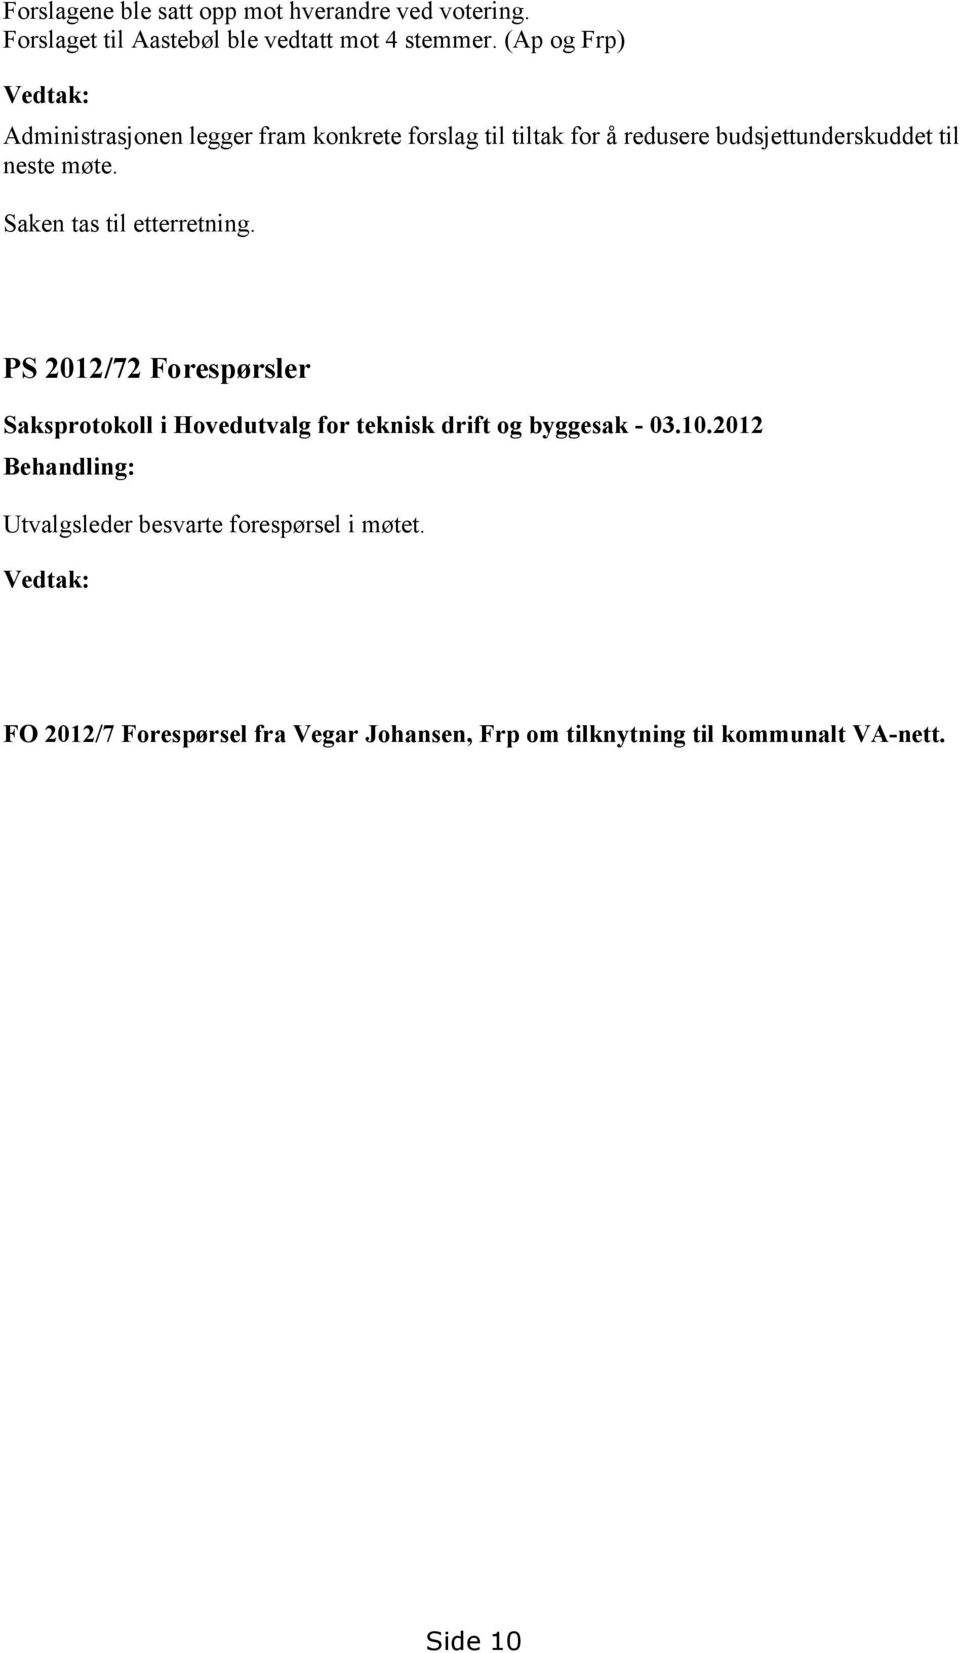 møte. Saken tas til etterretning. PS 2012/72 Forespørsler Saksprotokoll i Hovedutvalg for teknisk drift og byggesak - 03.10.